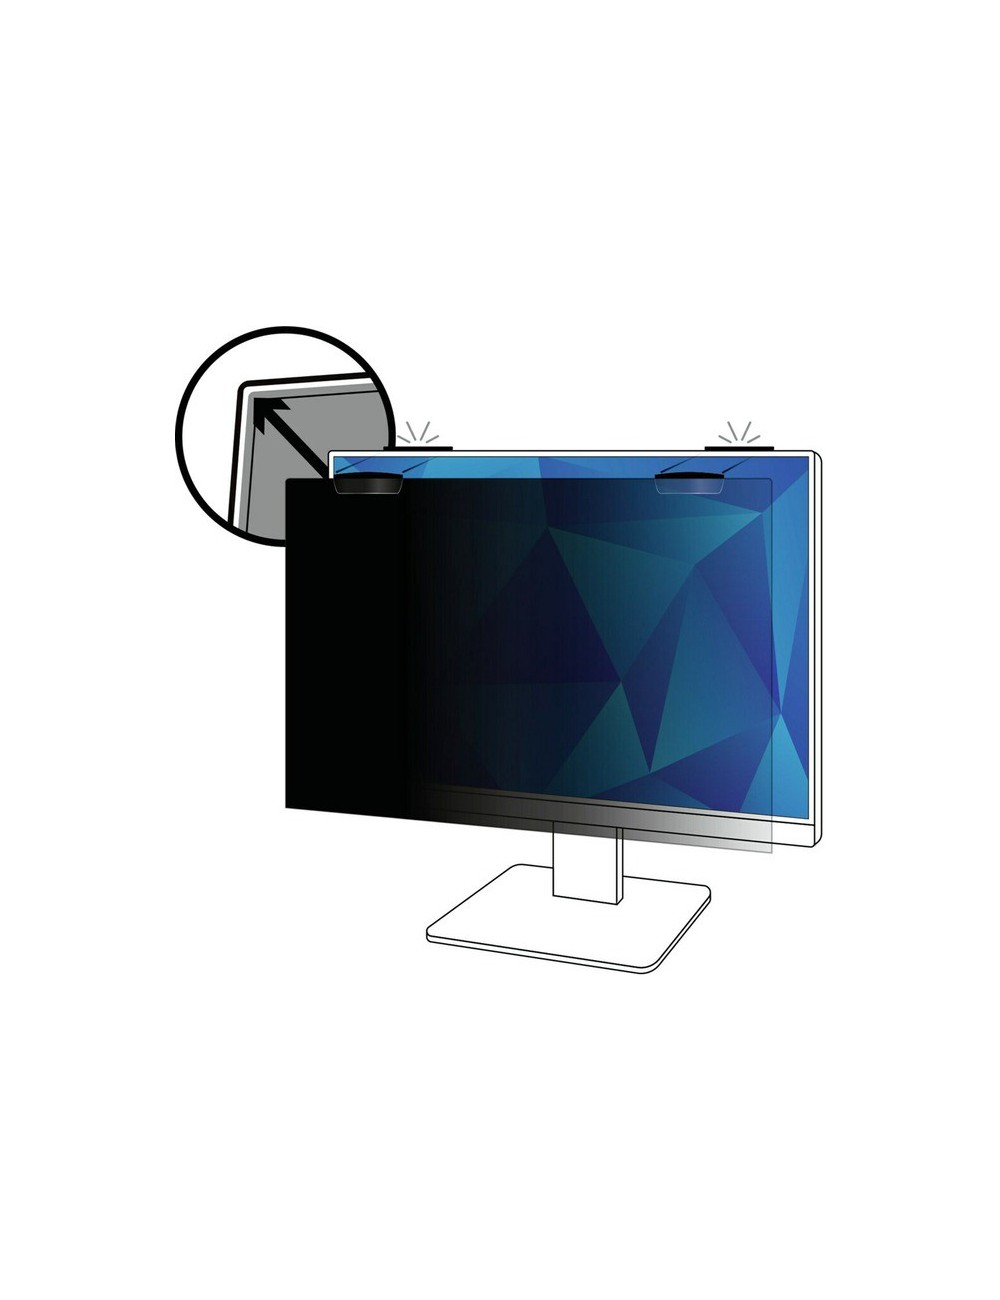 3M Filtro Privacy per 25 pol Monitor a Schermo Pieno con Attacco Magnetico COMPLY™, 16 9, PF250W9EM